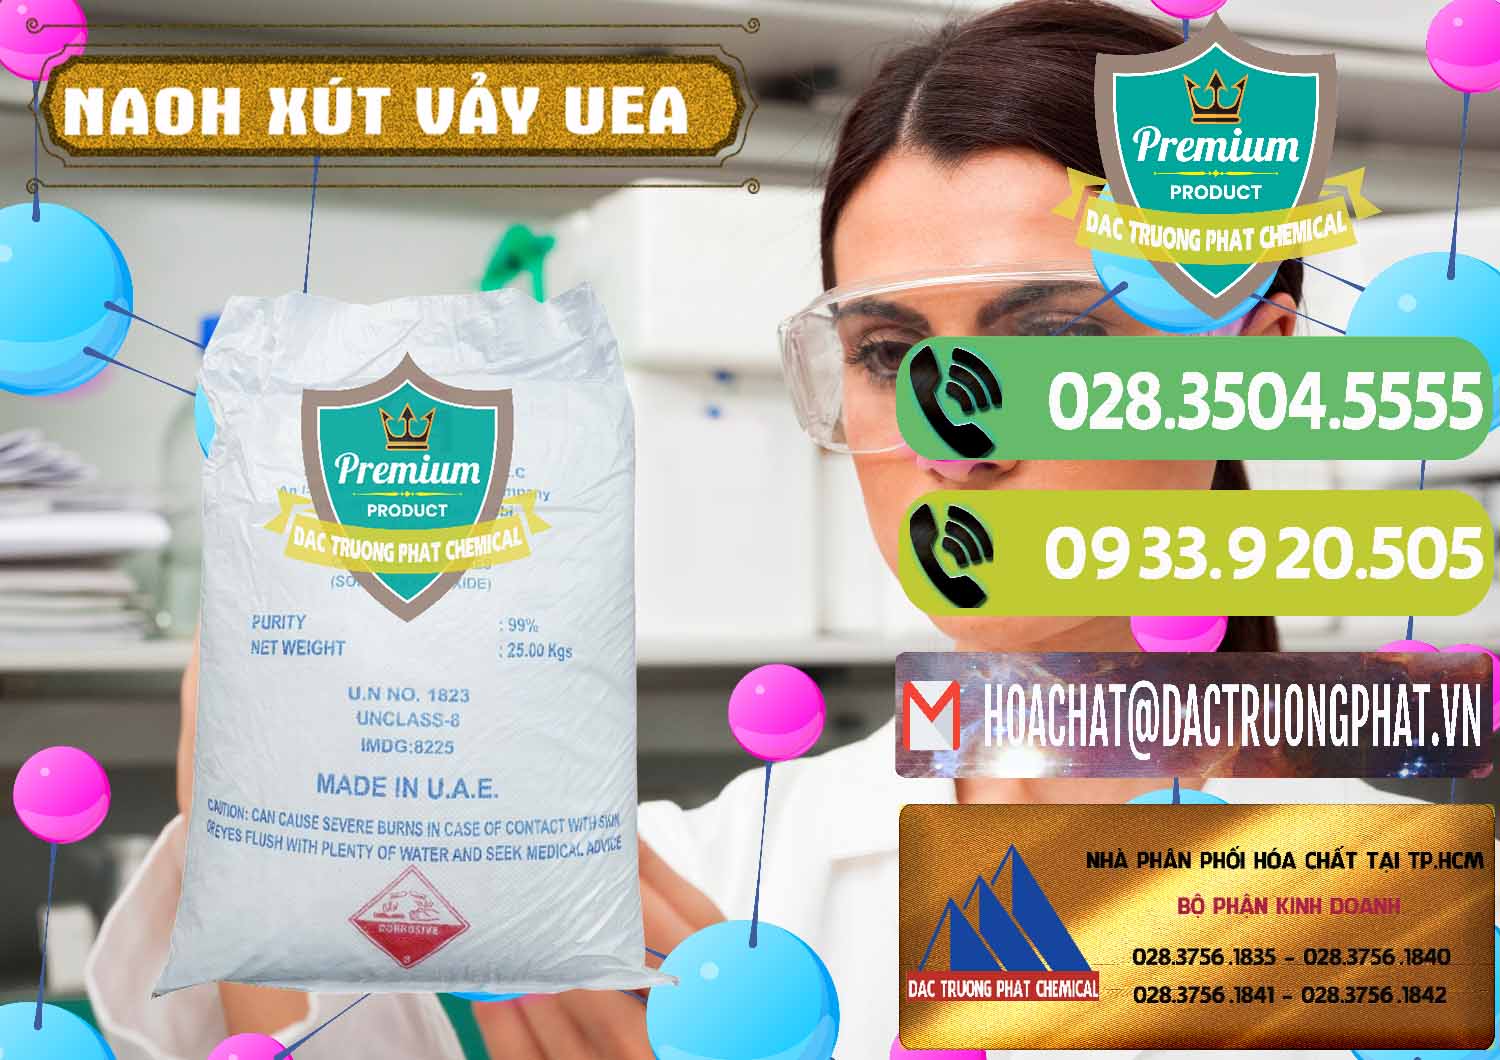 Cty cung cấp và bán Xút Vảy - NaOH Vảy UAE Iran - 0432 - Nơi nhập khẩu - phân phối hóa chất tại TP.HCM - hoachatmientay.vn